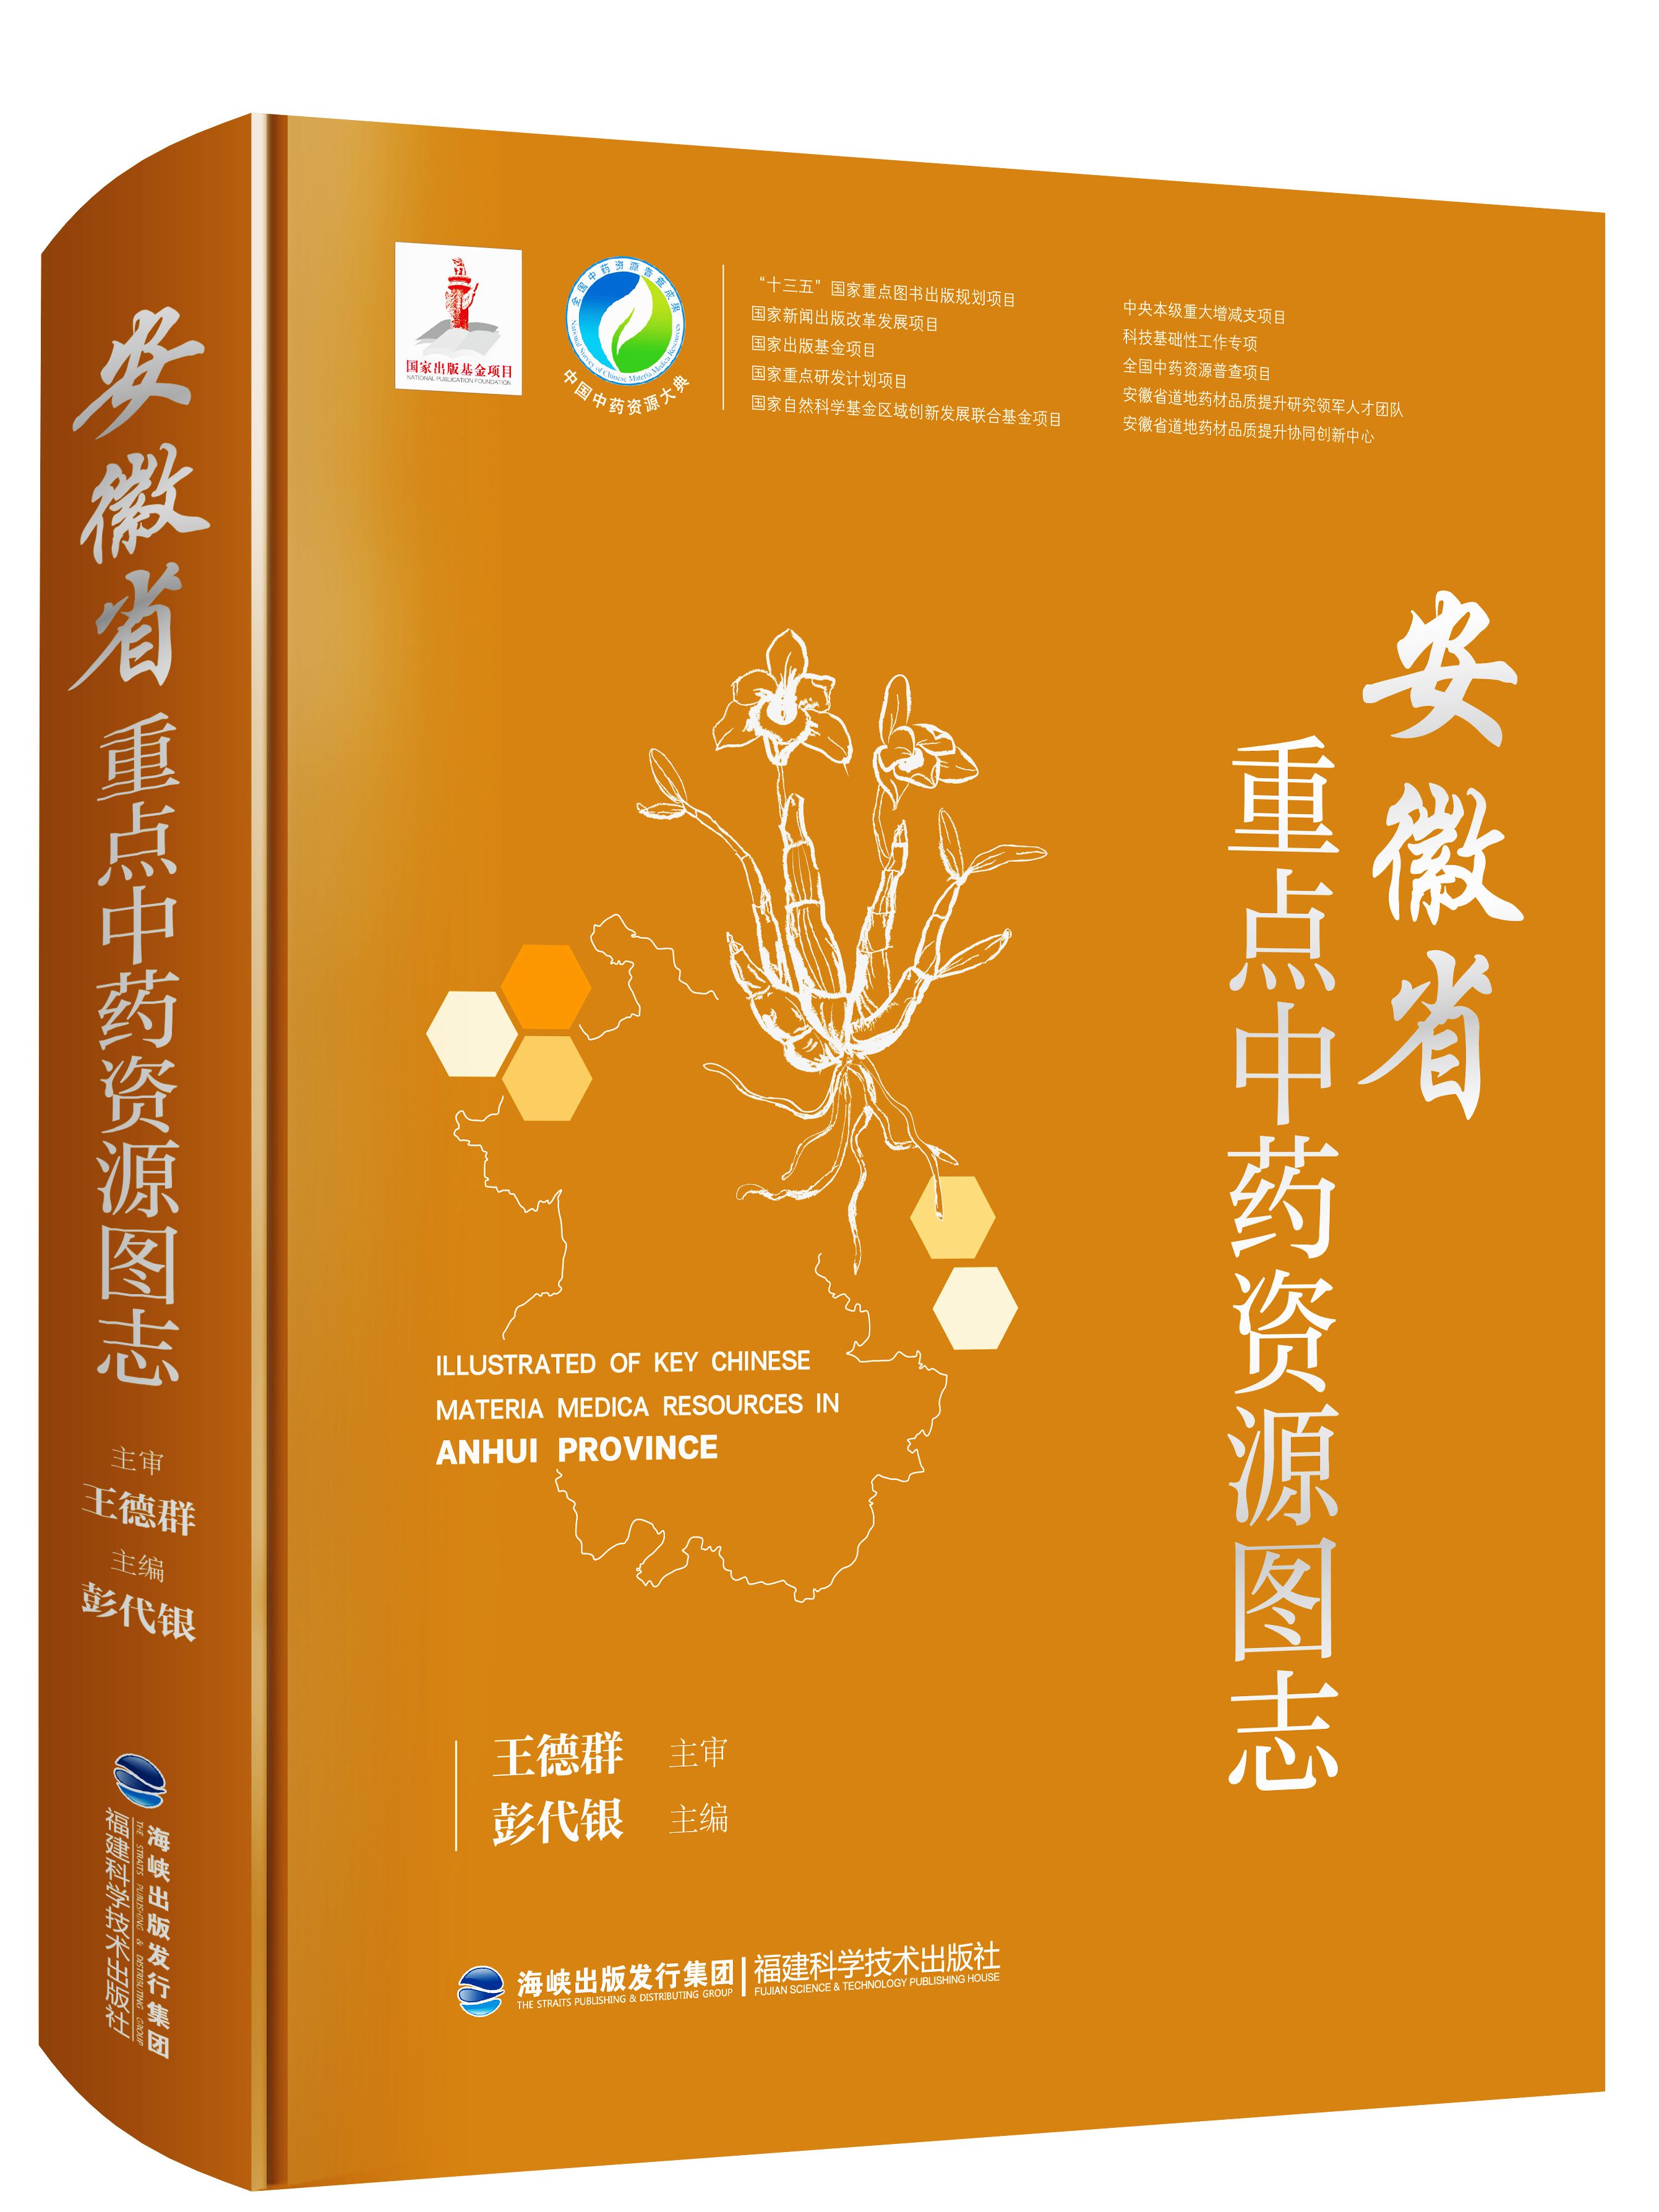 安徽省重點中藥資源圖志（中國中藥資源大典）